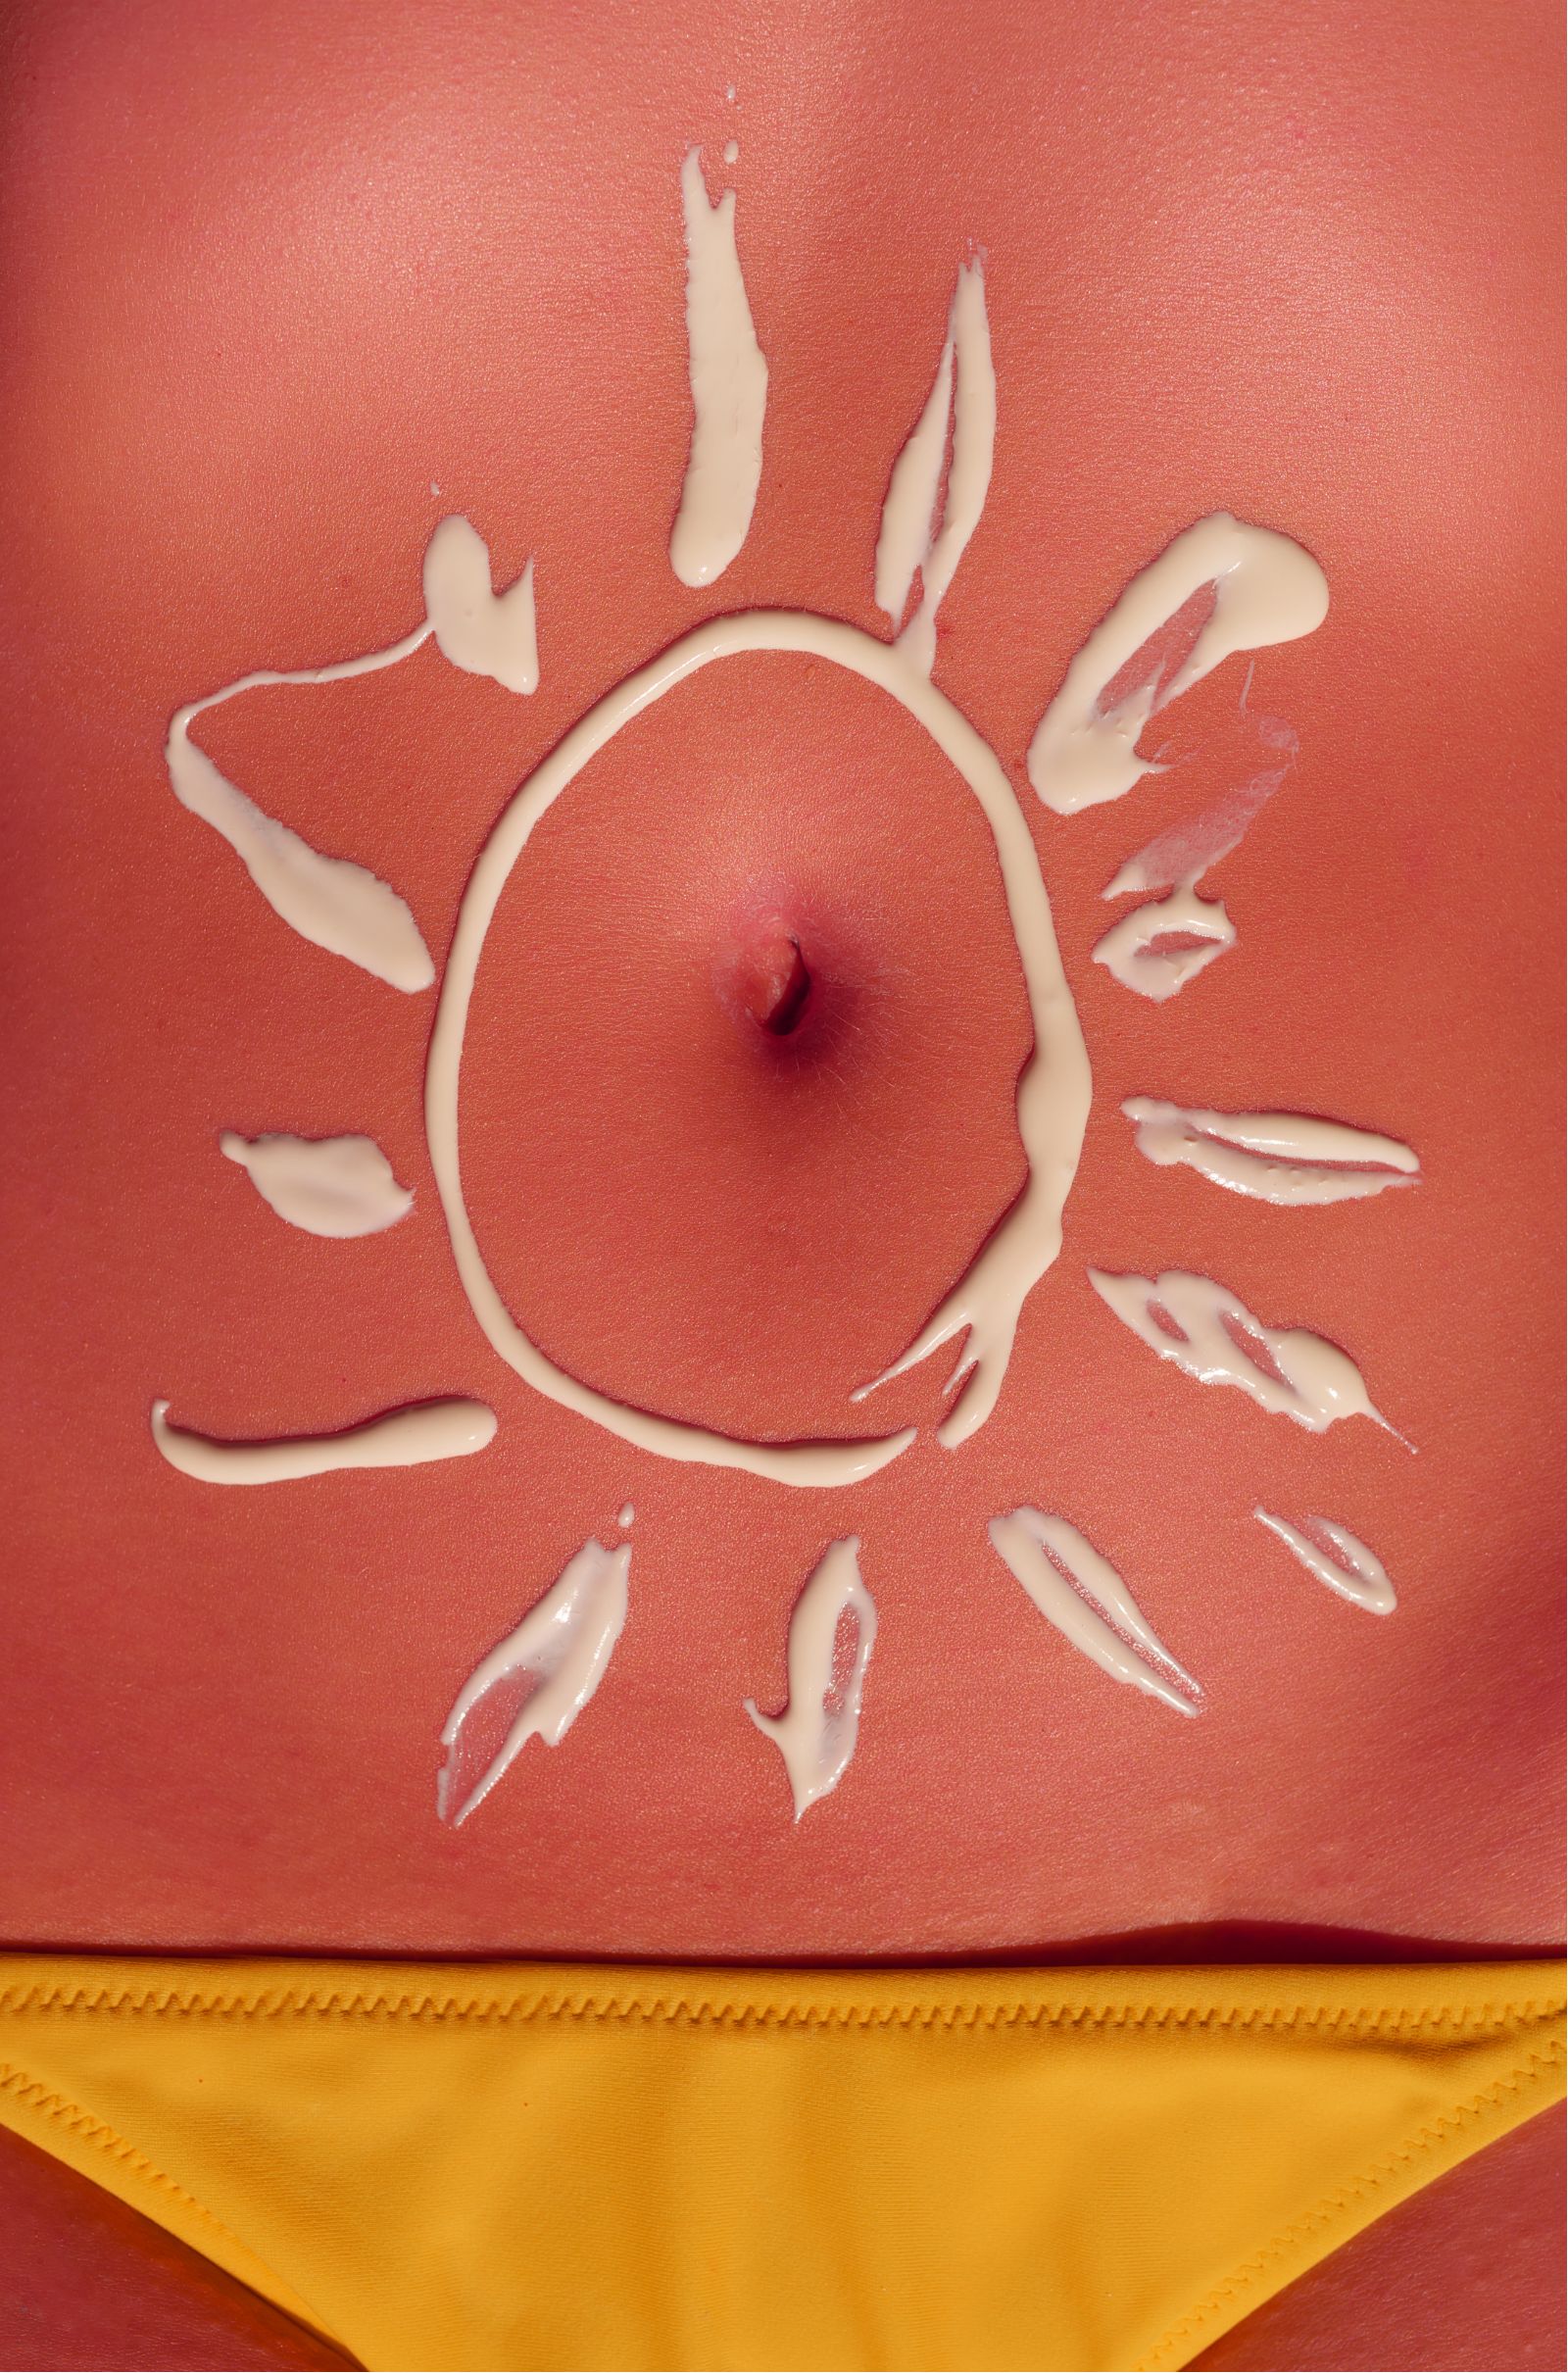 sunburn relief